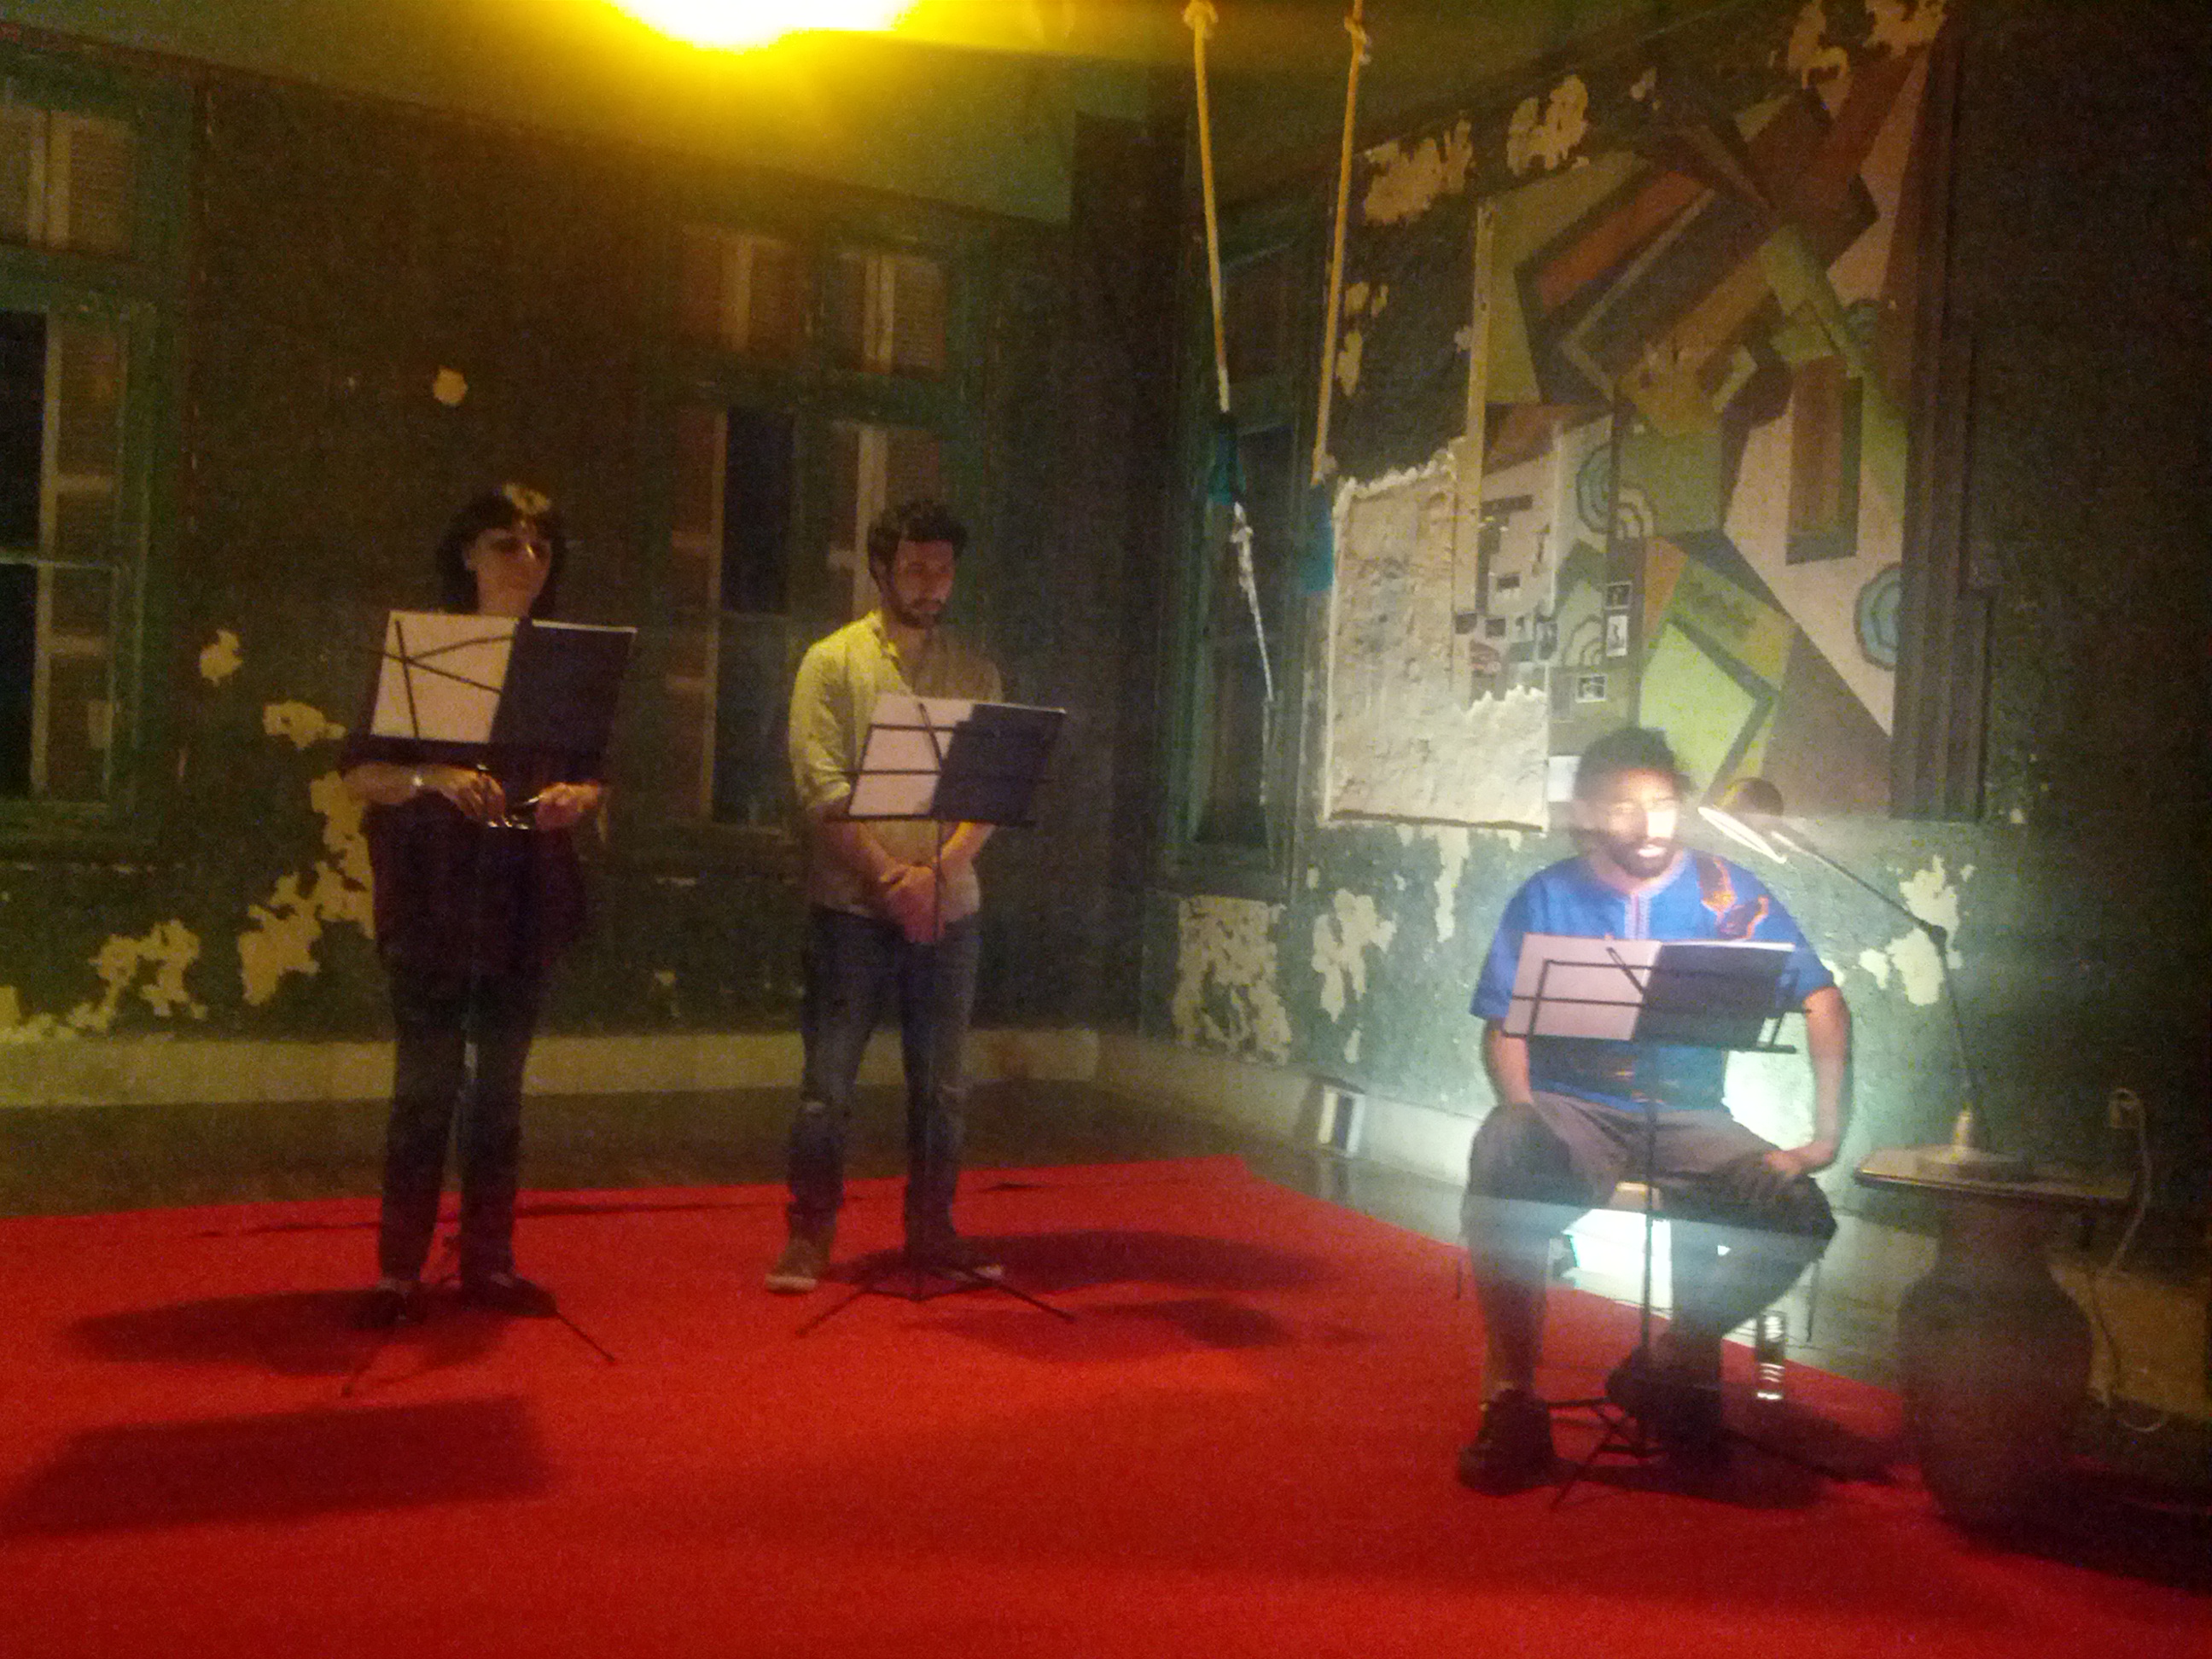 قراءات مسرحية ل"قبل العشاء" في مانشن، بيروت، 2014